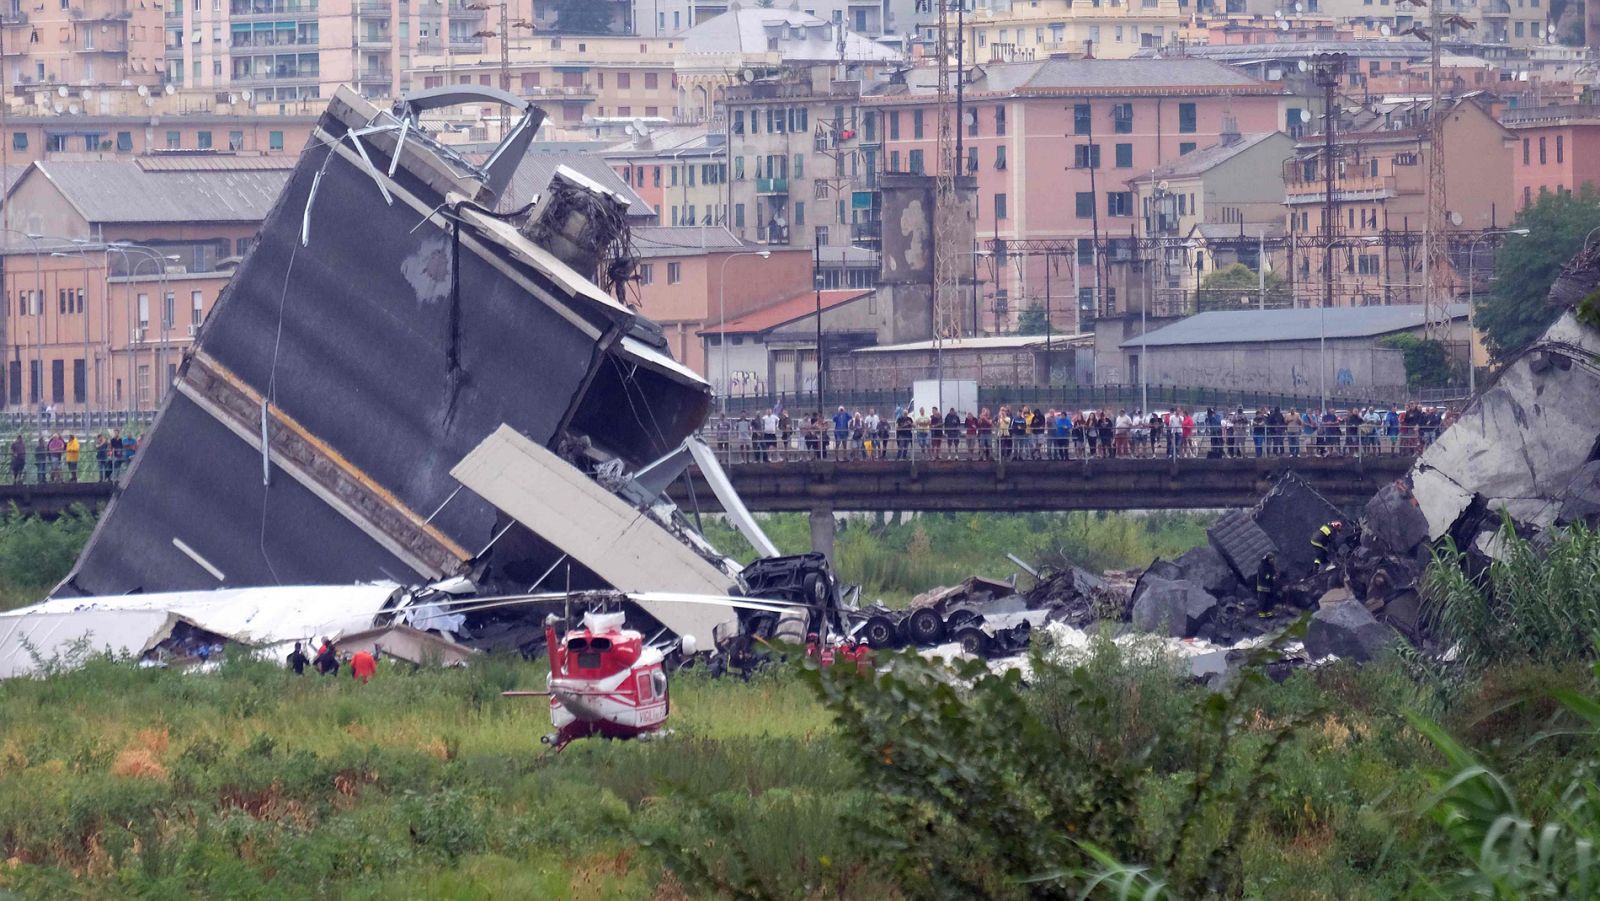 Imagen del viaducto Morandi en Génova, desplomado el 14 de agosto